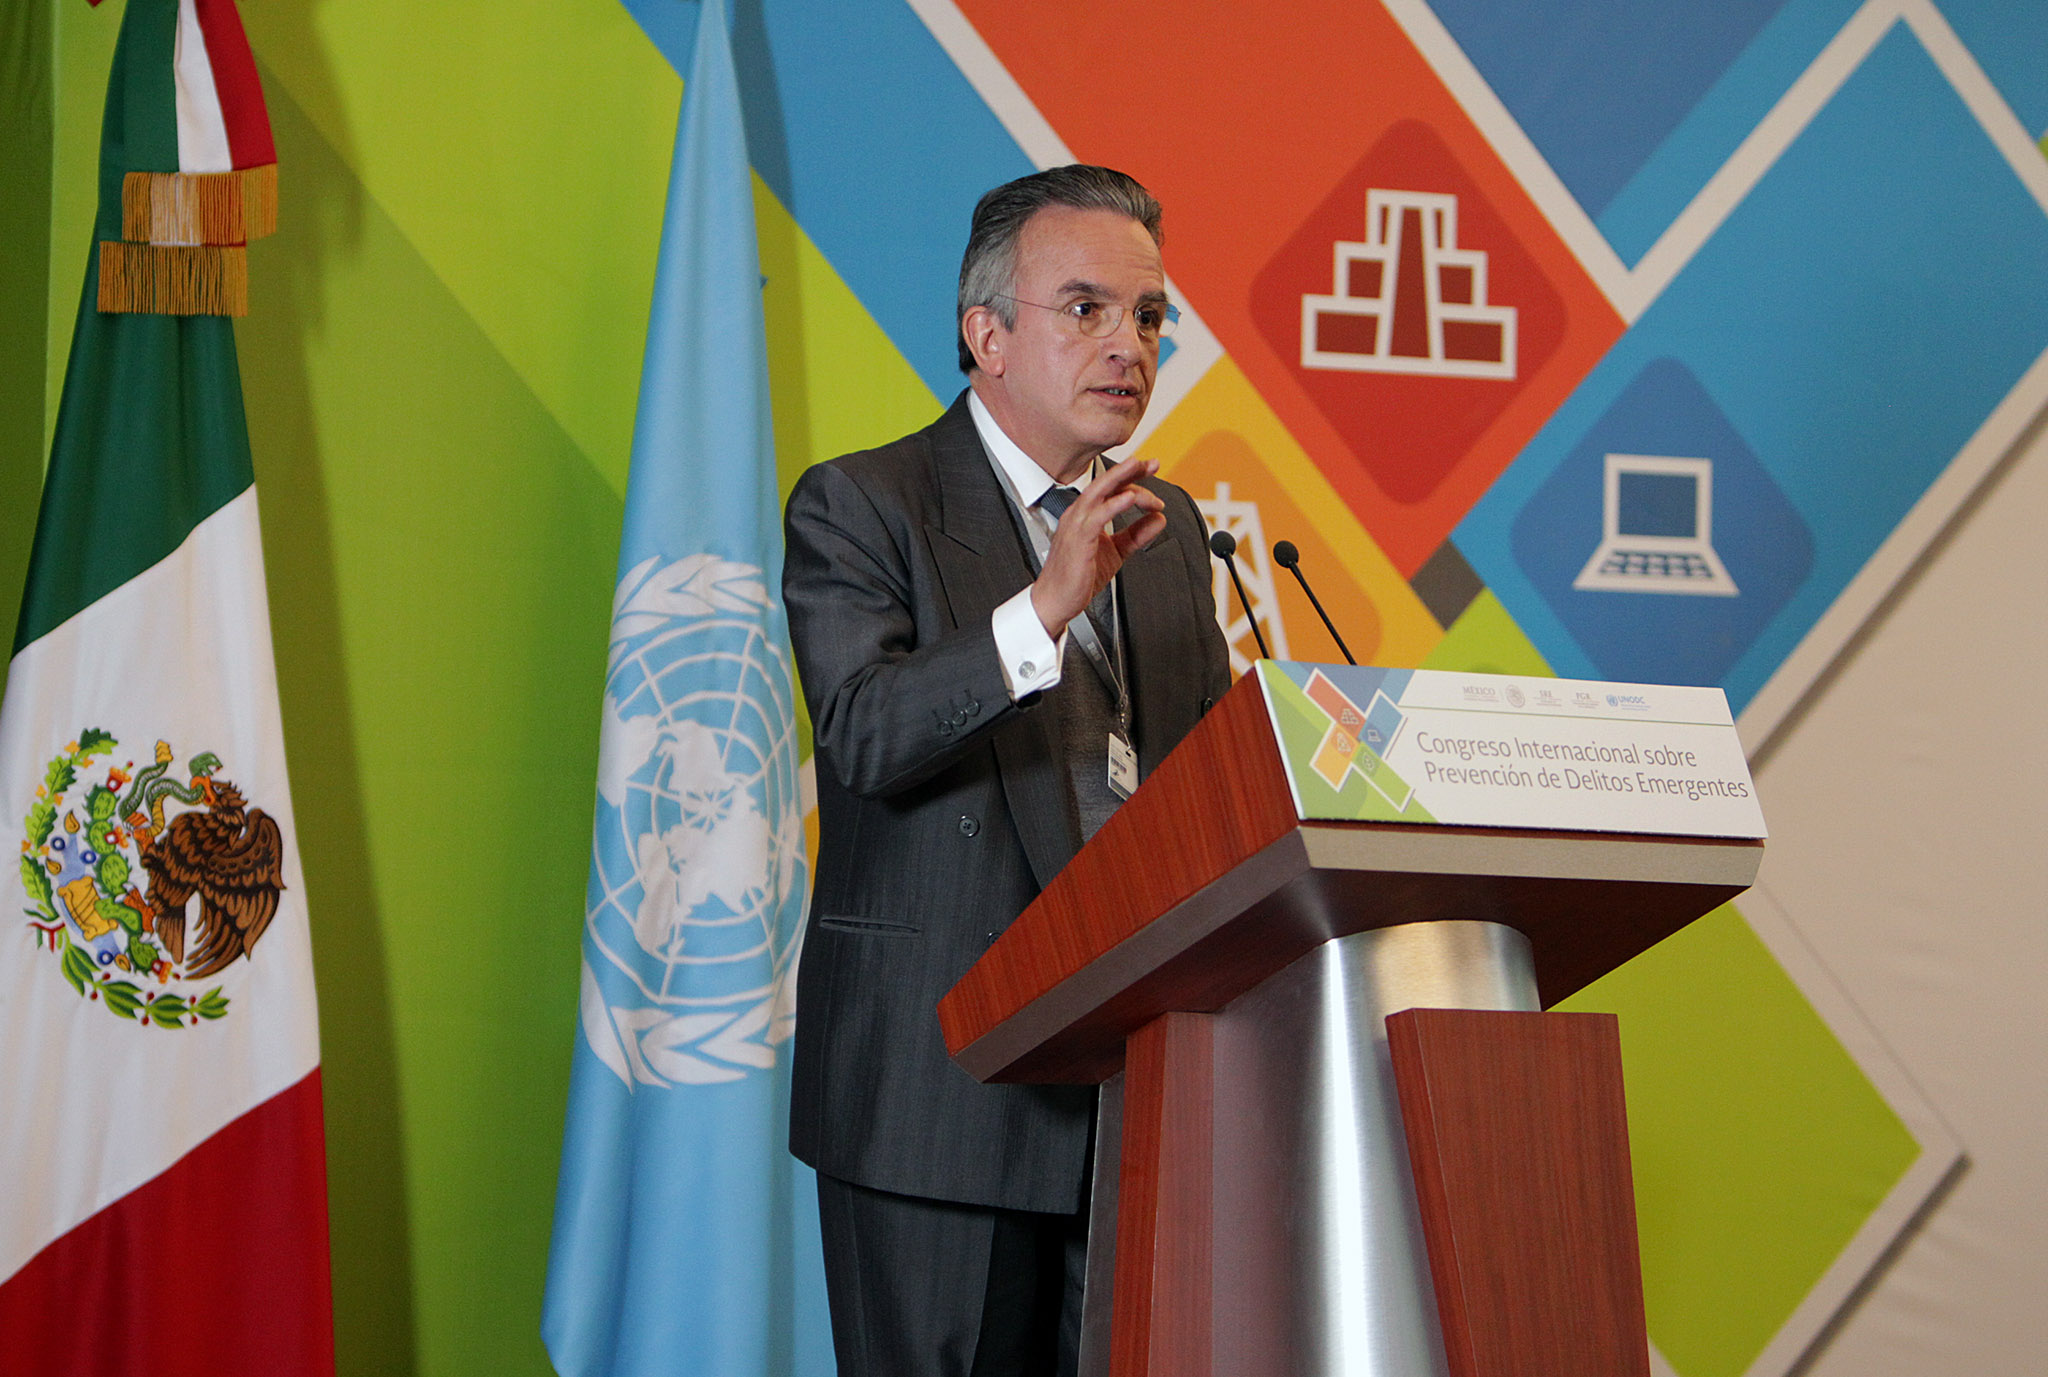 FOTO 1 Subsecretario Miguel Ruiz Caba as en la Clausura Congreso Internacional sobre Prevenci n de Delitos Emergentesjpg